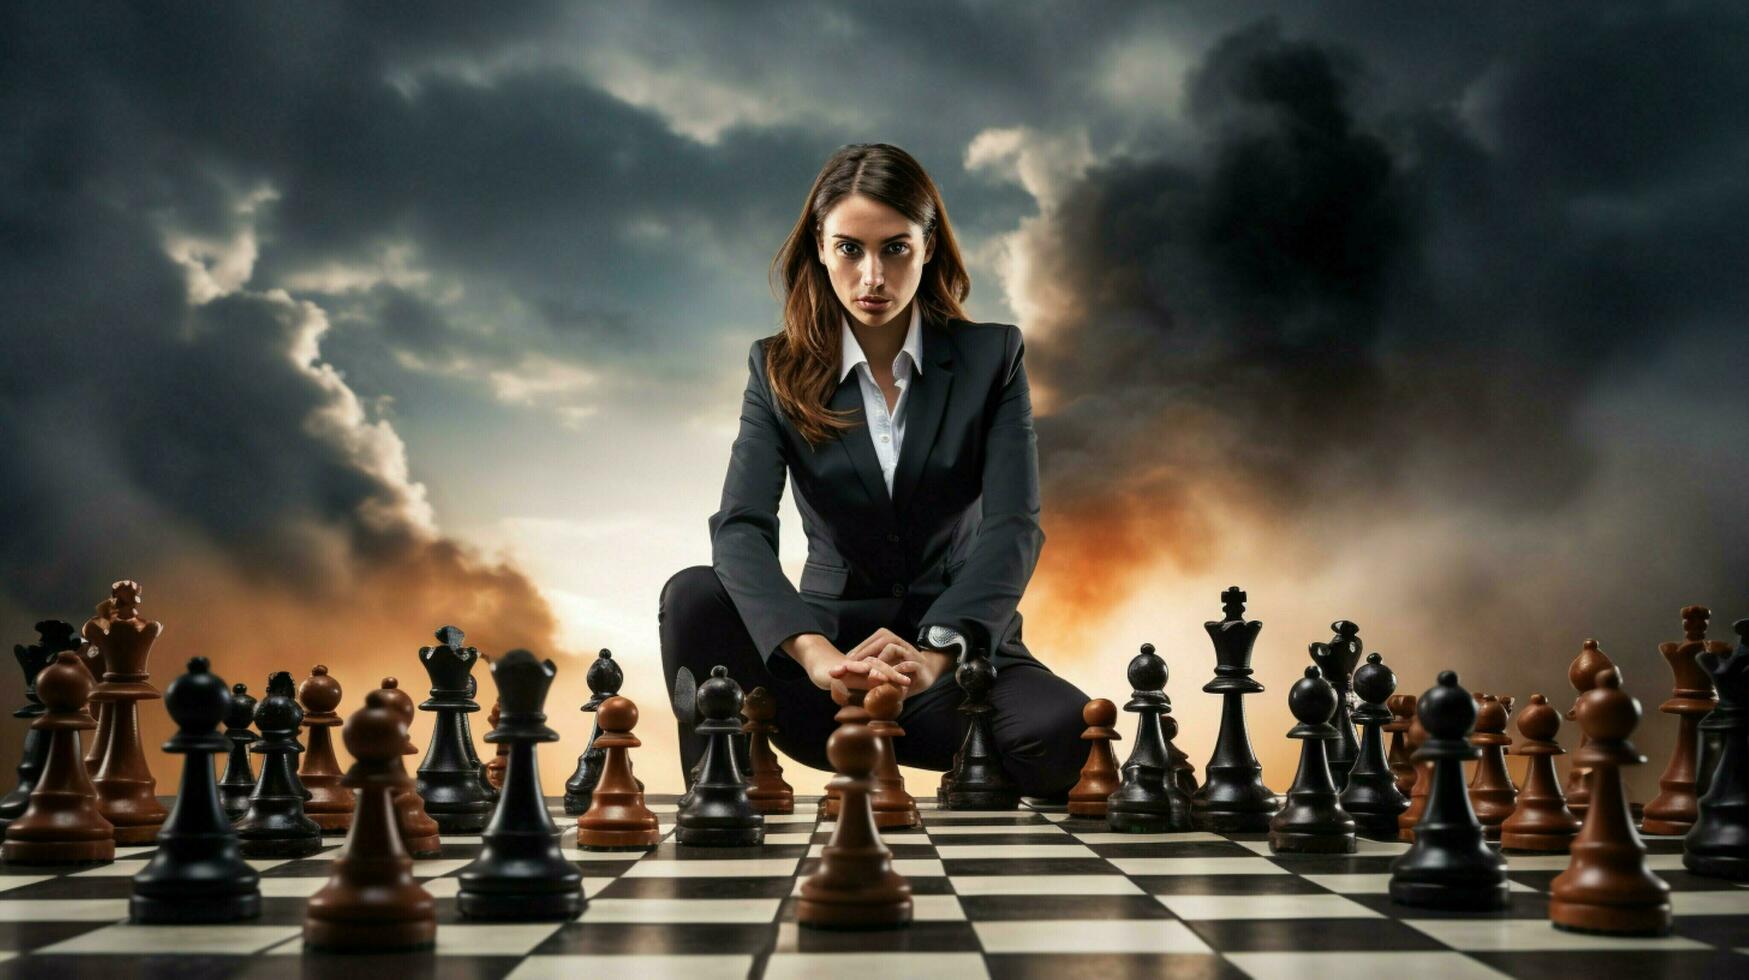 empresária cria estratégias sucesso em xadrez borda foto